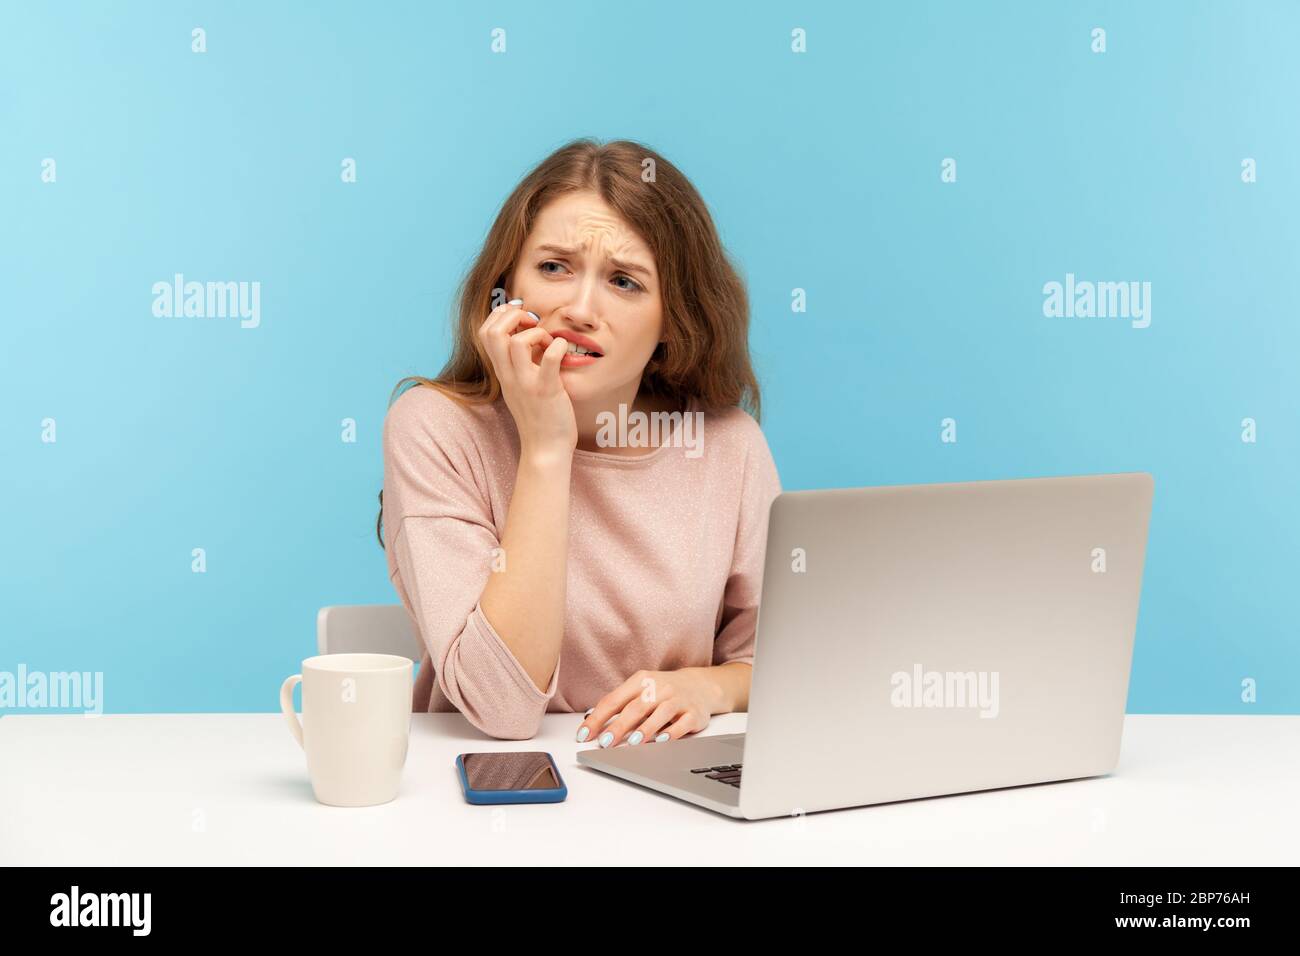 Ängstlich depressive junge Frau Mitarbeiter am Arbeitsplatz mit Laptop und beißende Nägel sitzen, nervös suchen besorgt, Angst vor Frist stressigen Job. ich Stockfoto